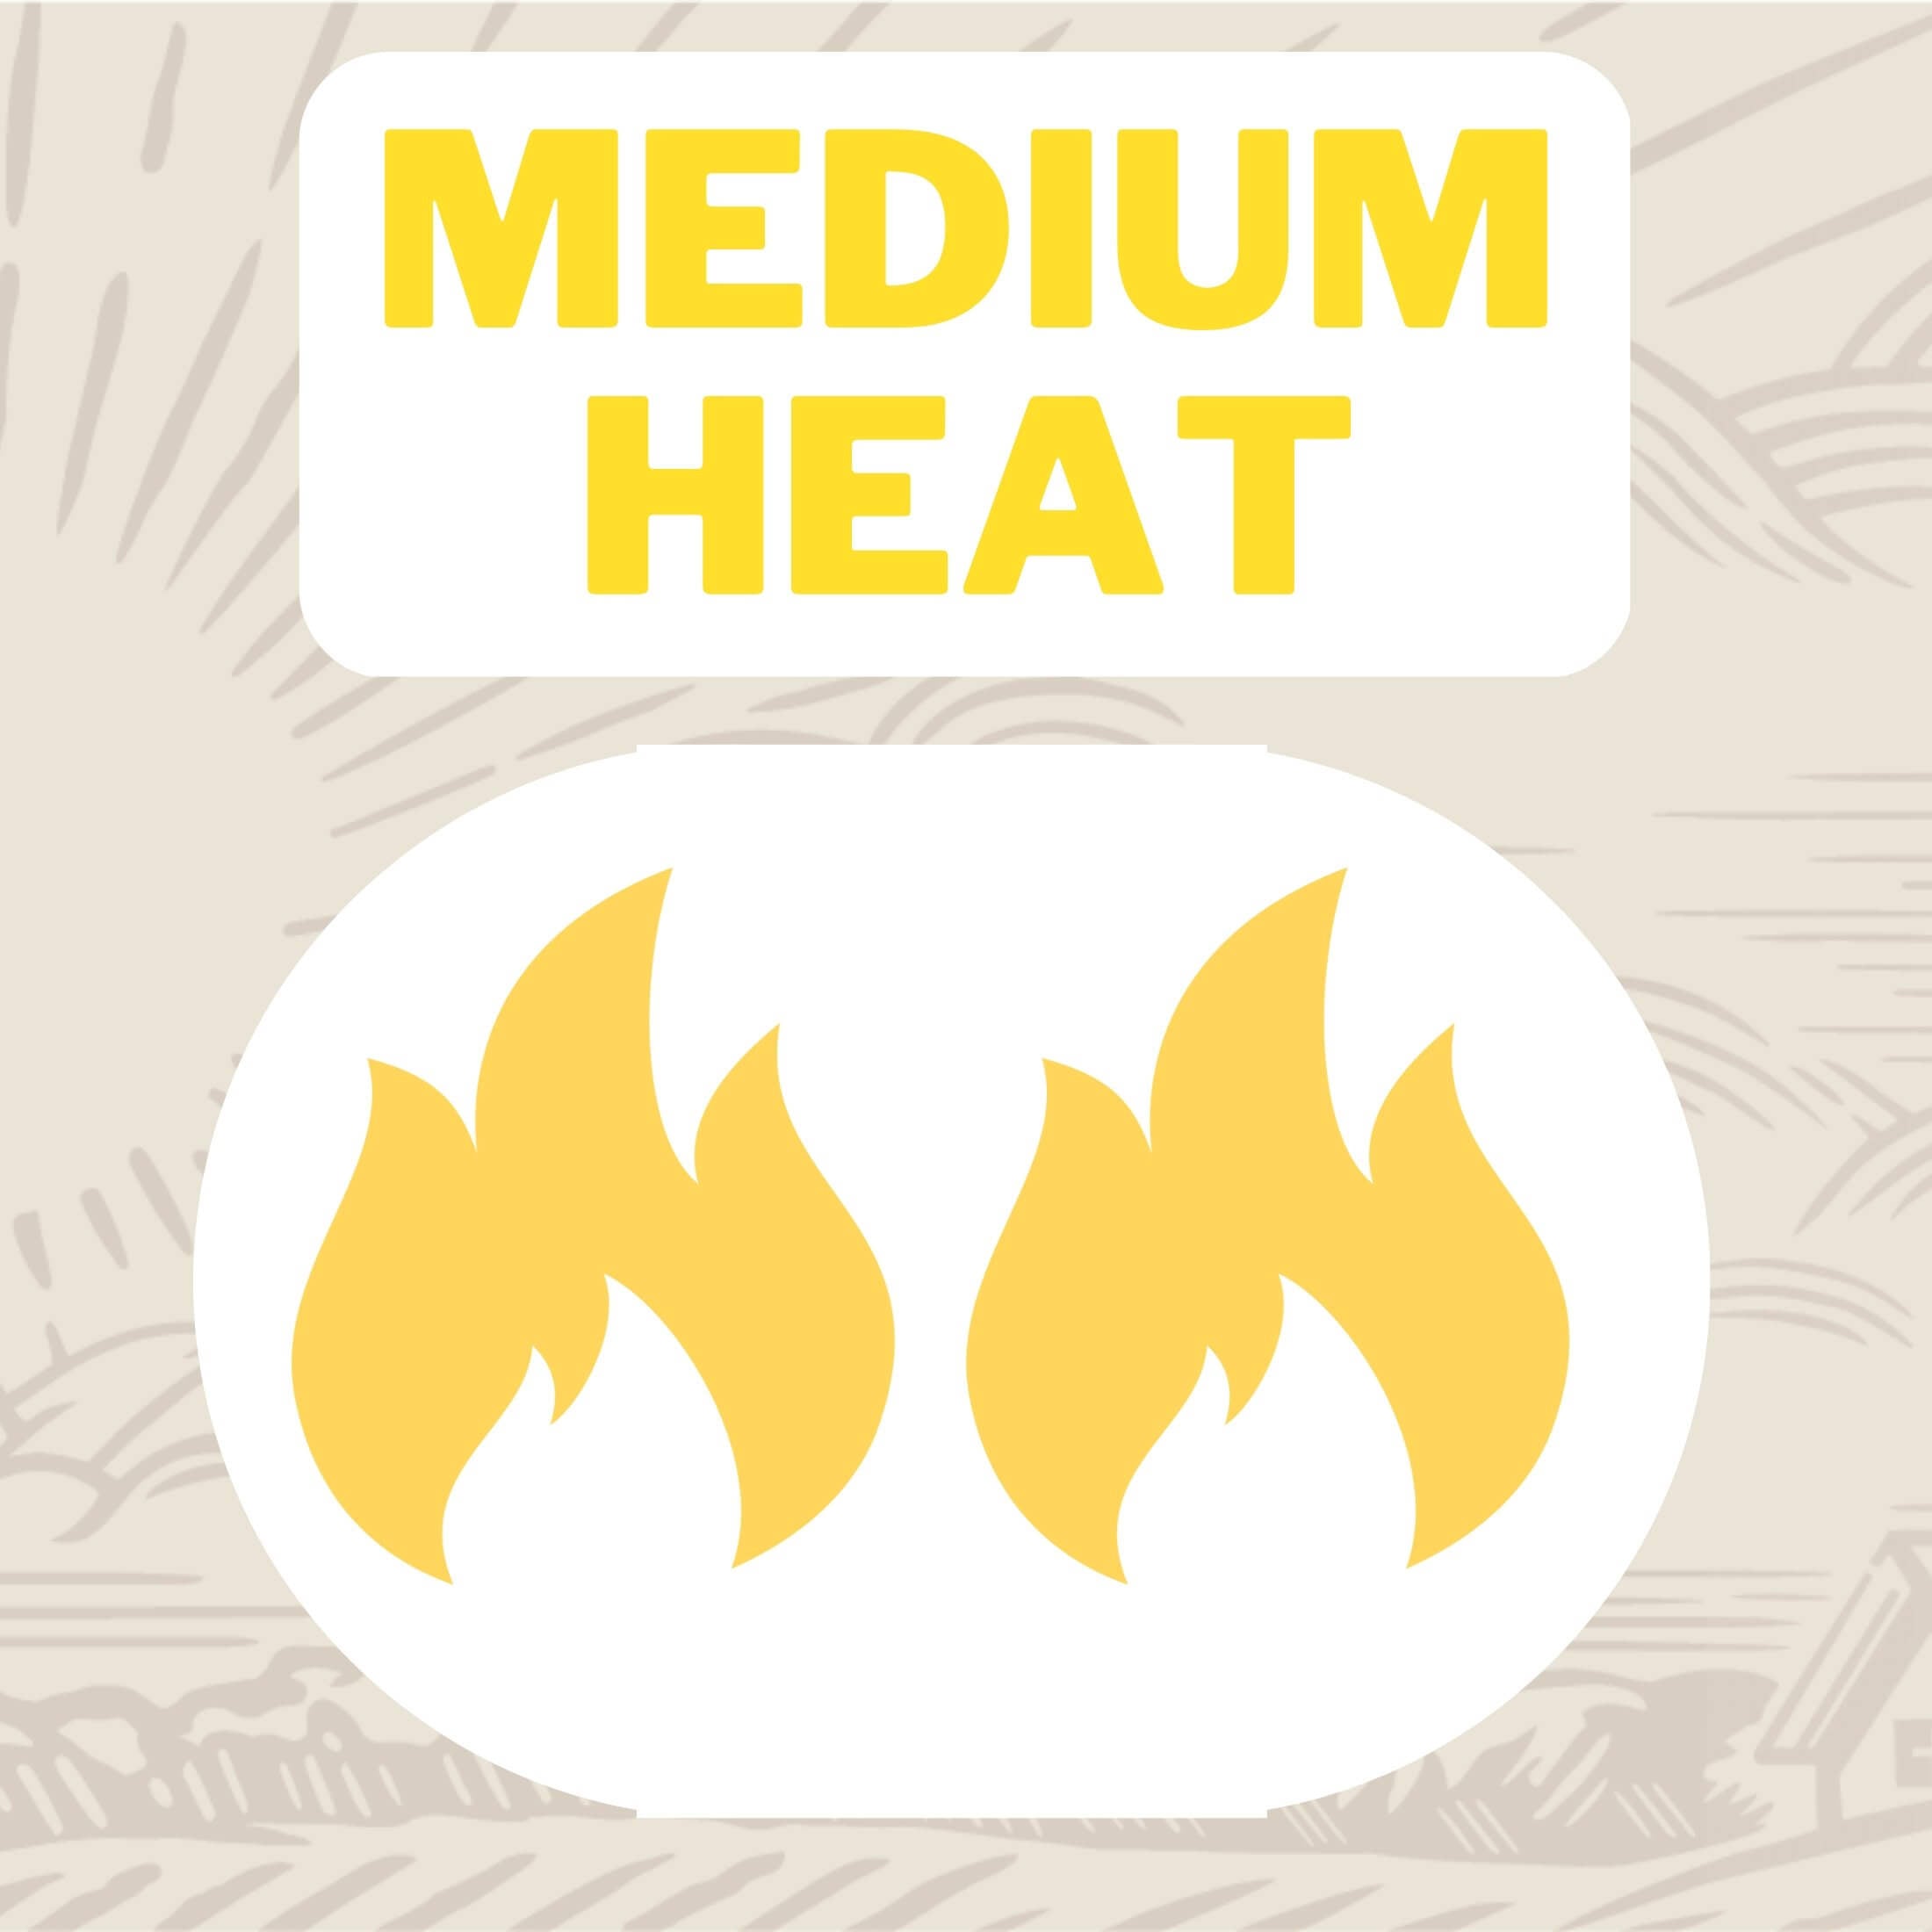 Heat Level : Medium